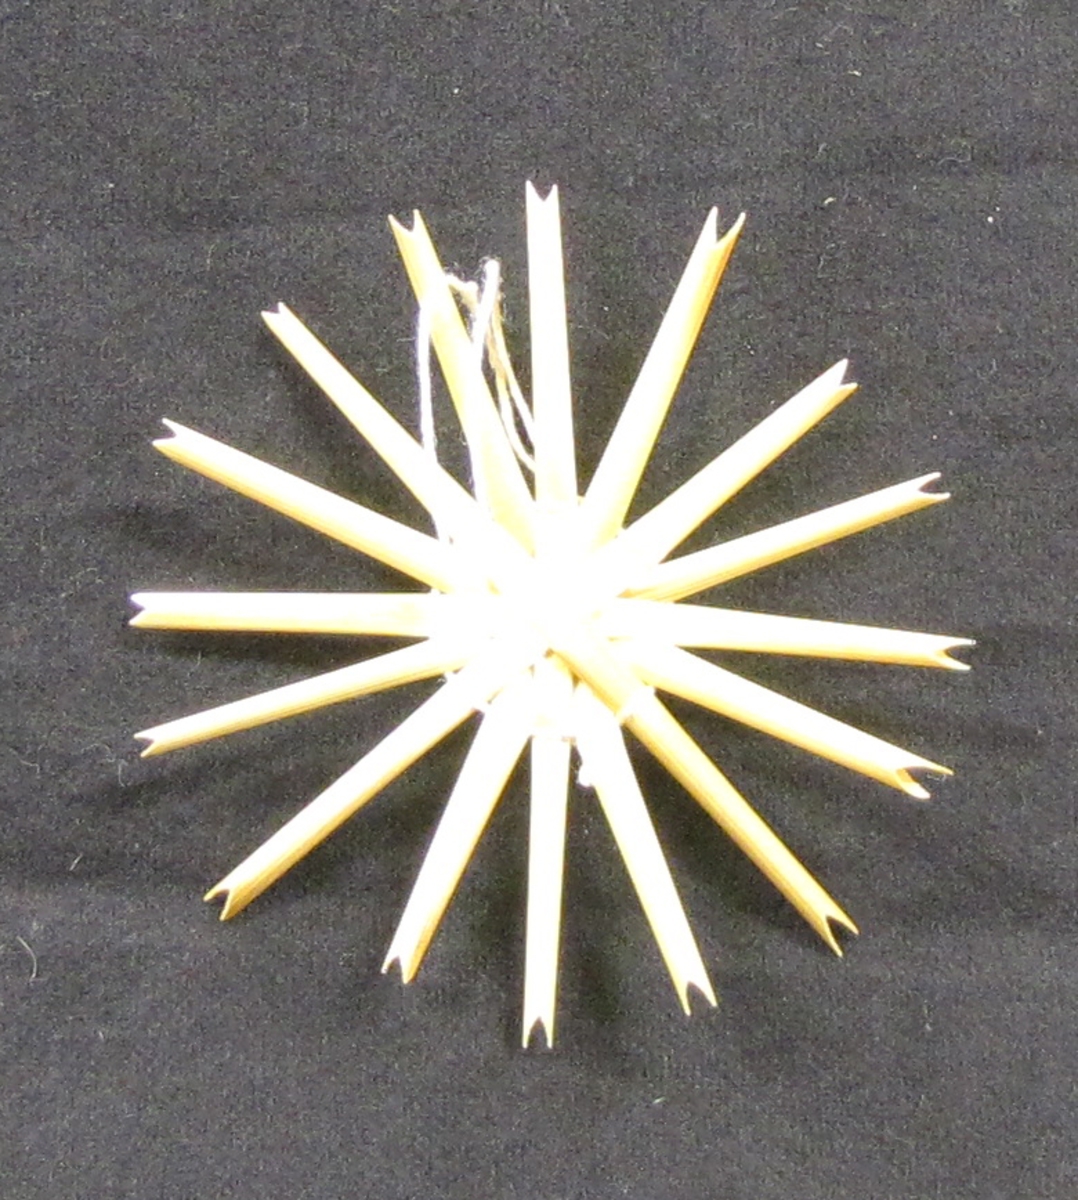 Stjärna i enkel knytteknik i halm.

Tillverkad 1984 för halmdokumentationen.